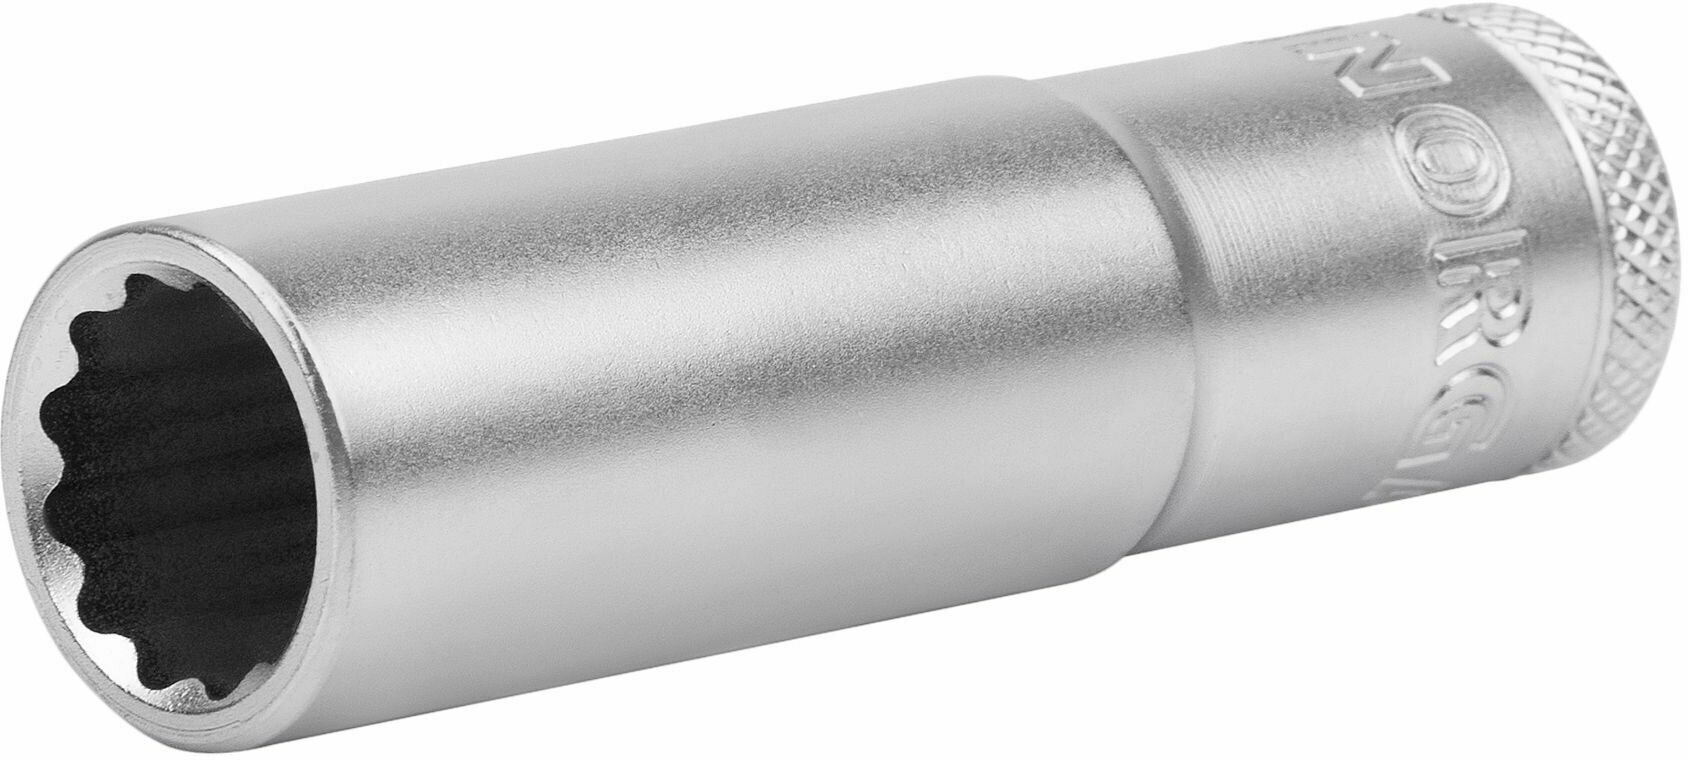 Головка торцевая 1/2" NORGAU Industrial 15 мм 12-гранная удлиненная с шариковой фиксацией